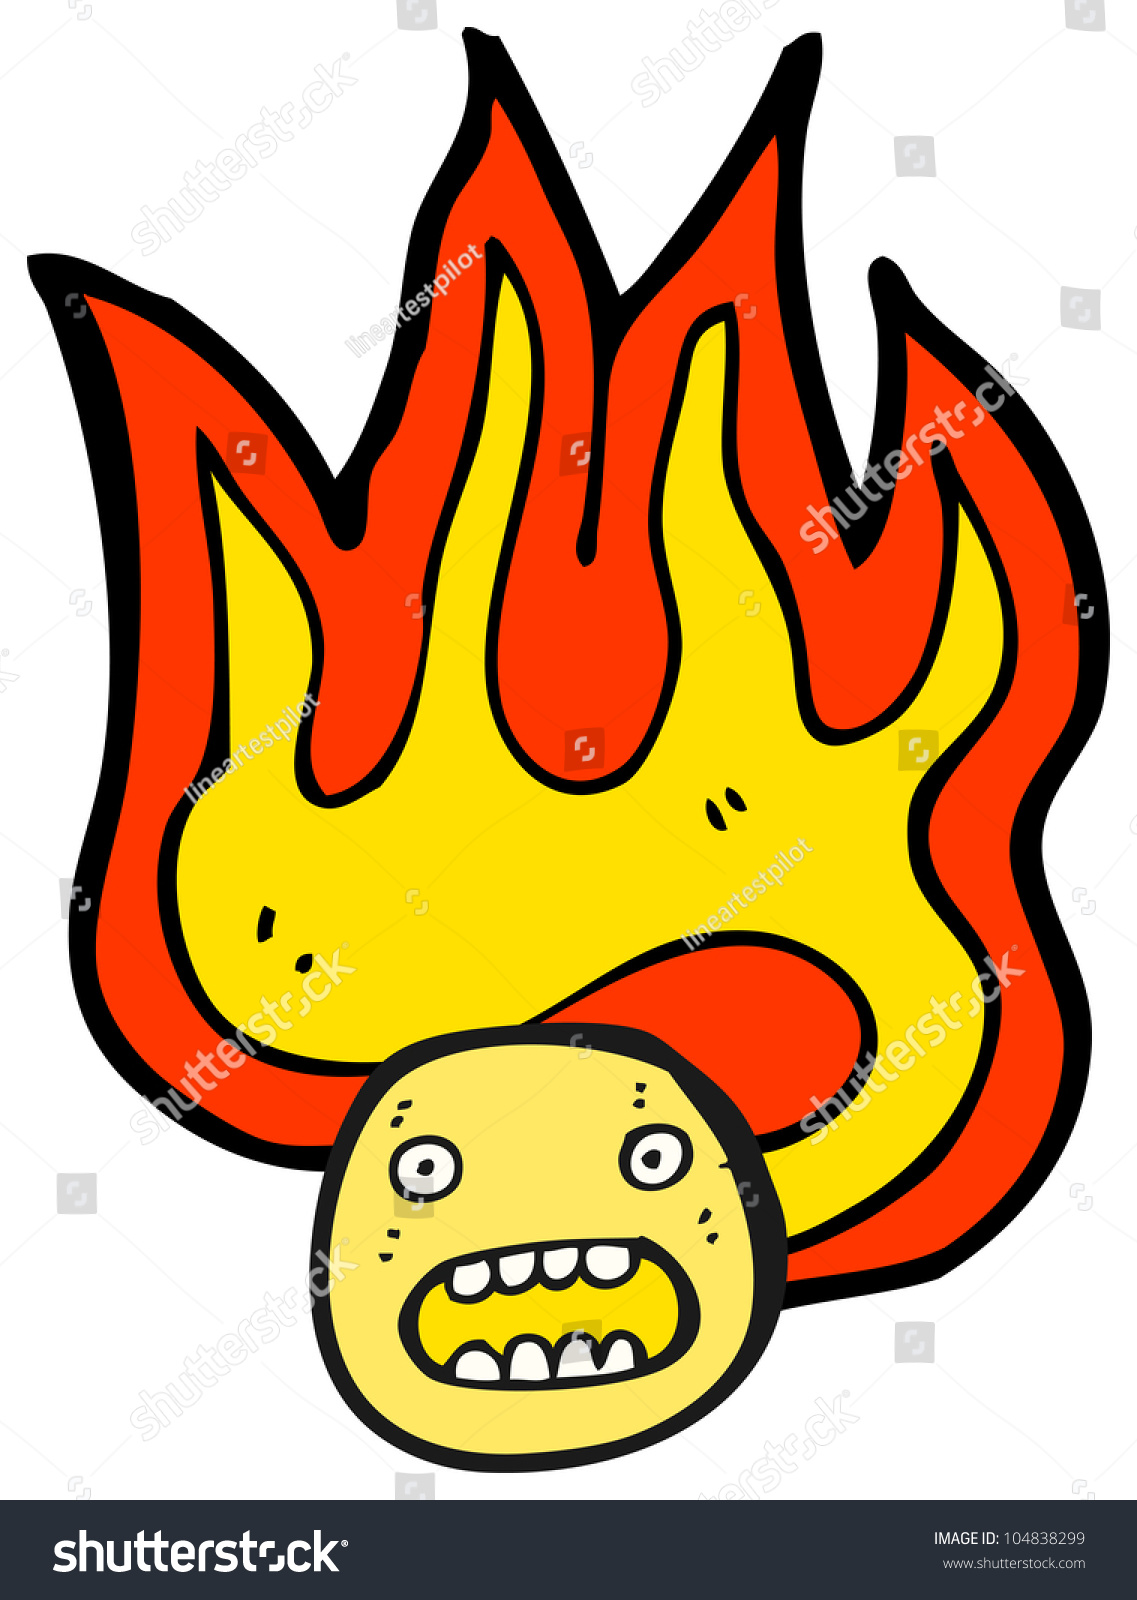 Cartoon Flaming Emoticon Face Stock Illustration 104838299